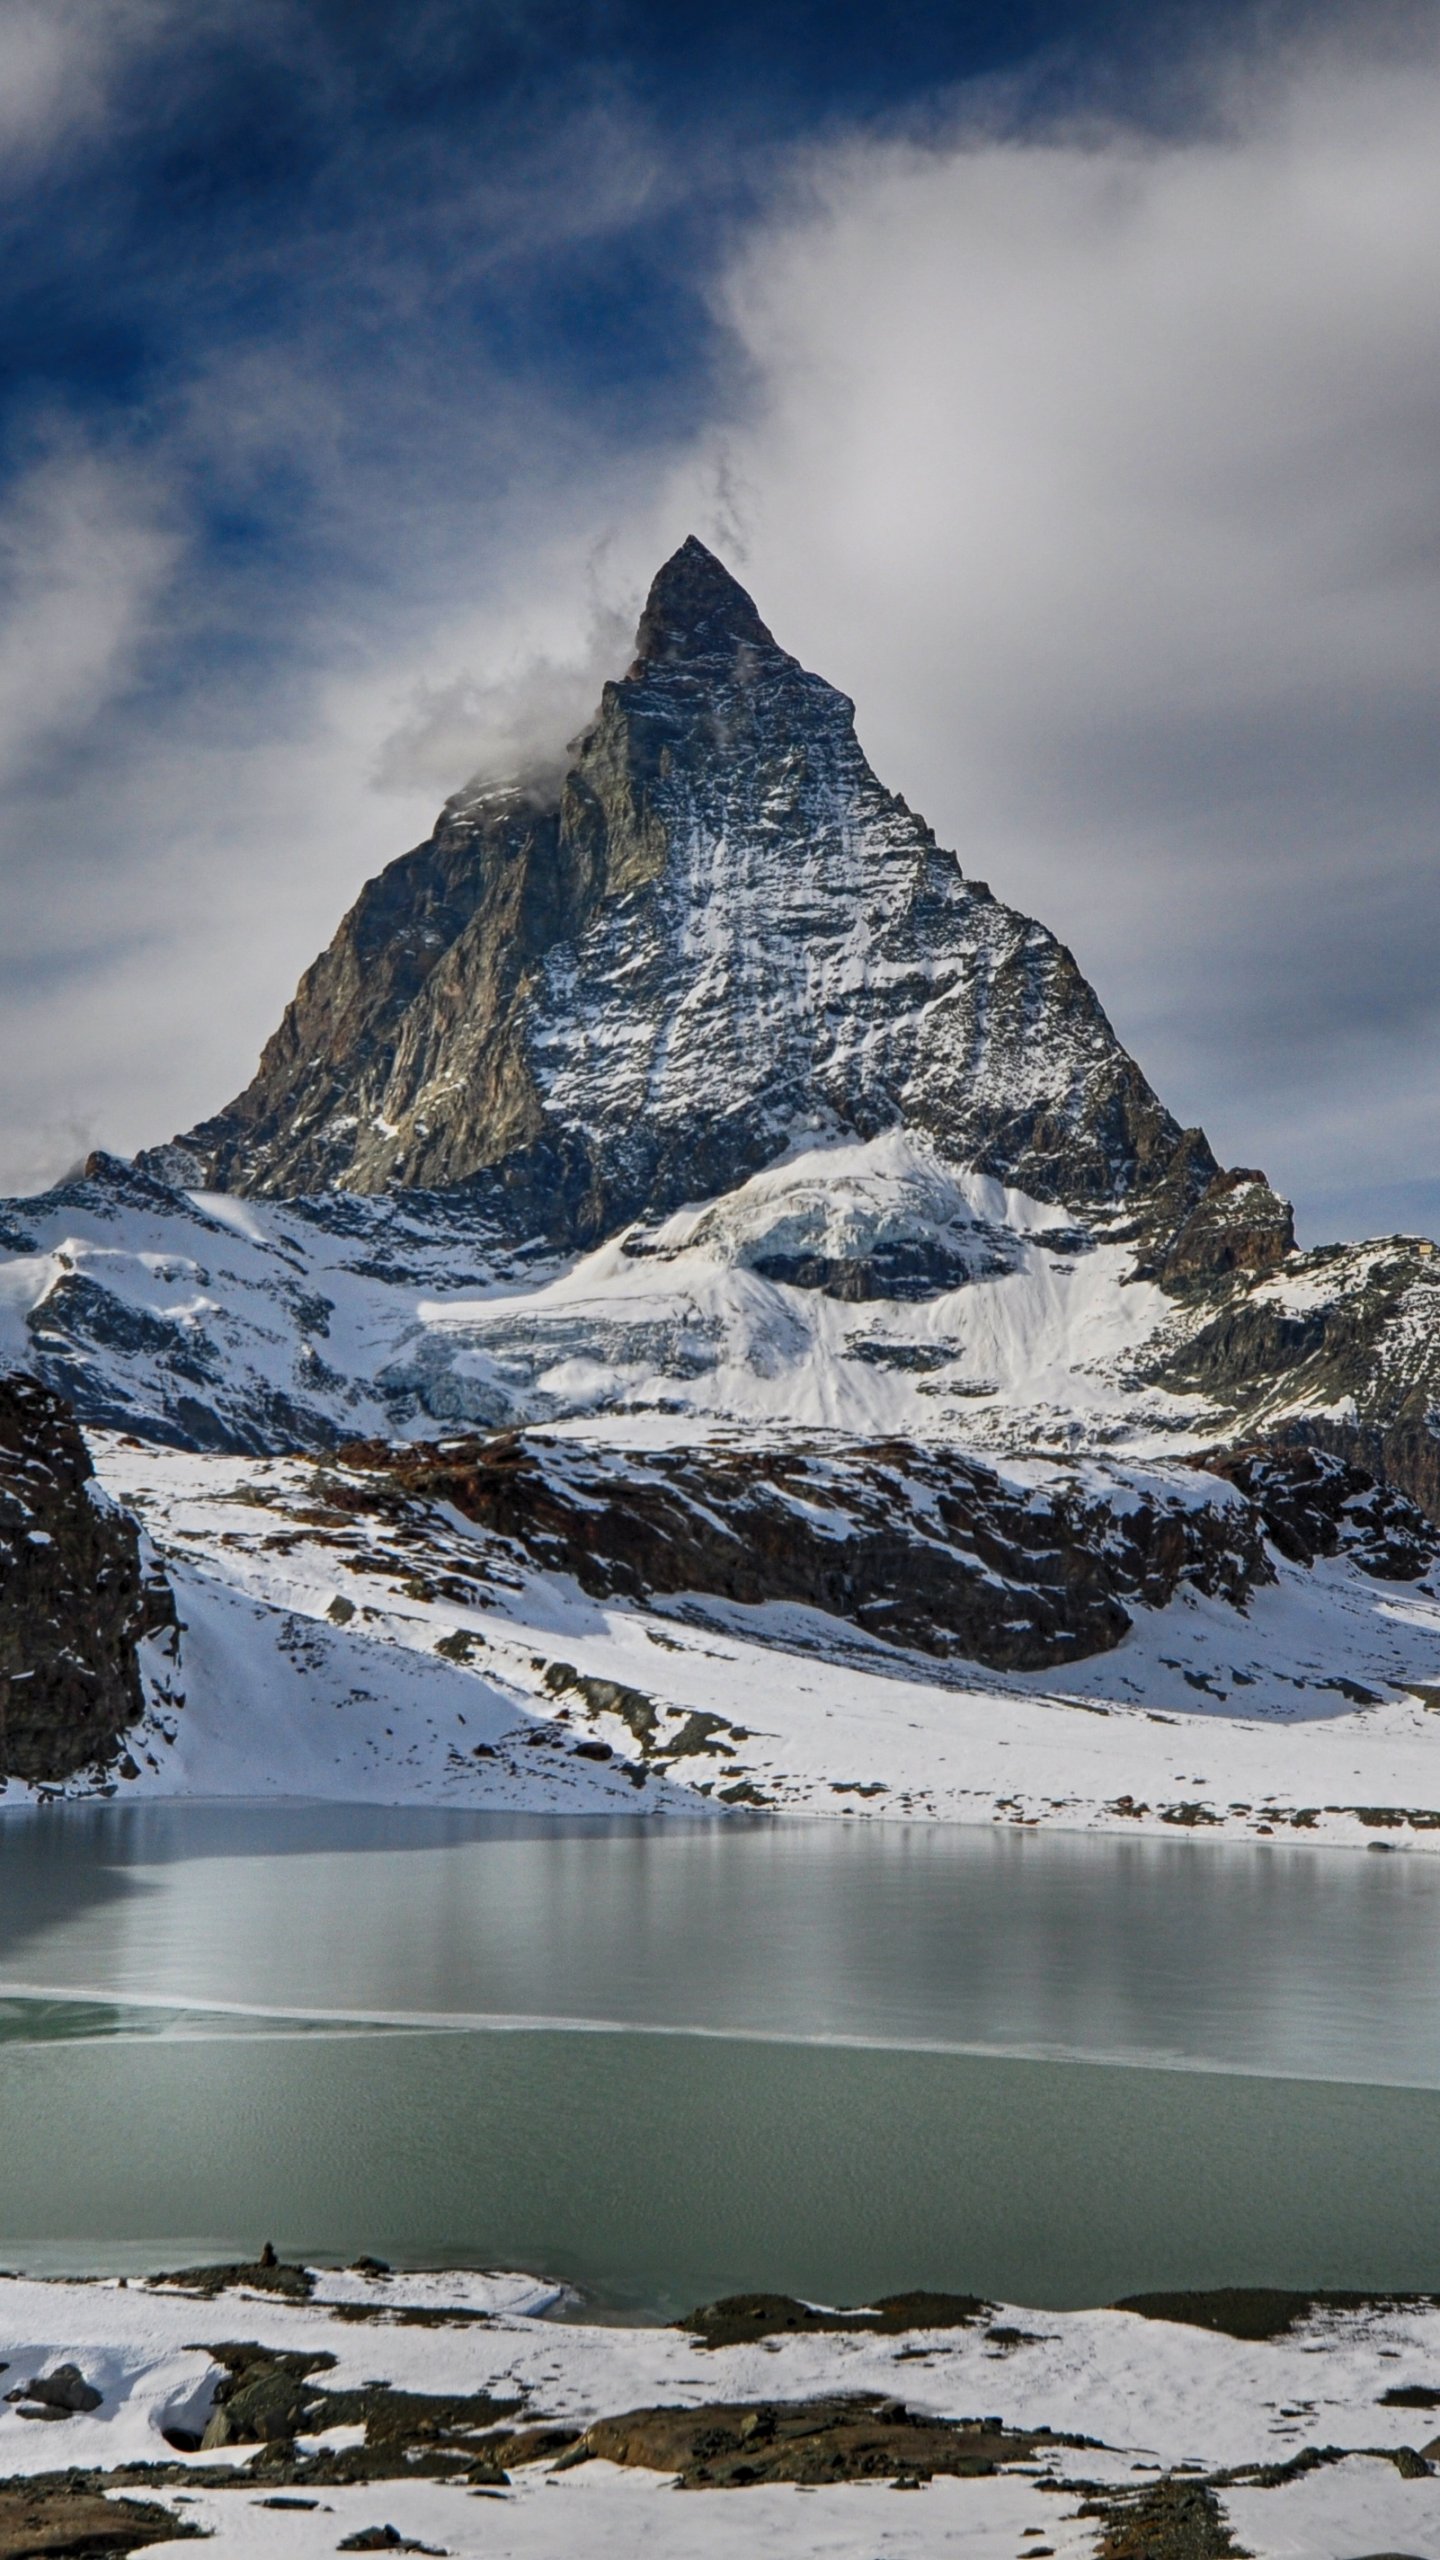 Matterhorn Wallpaper - iPhone, Android & Desktop Backgrounds